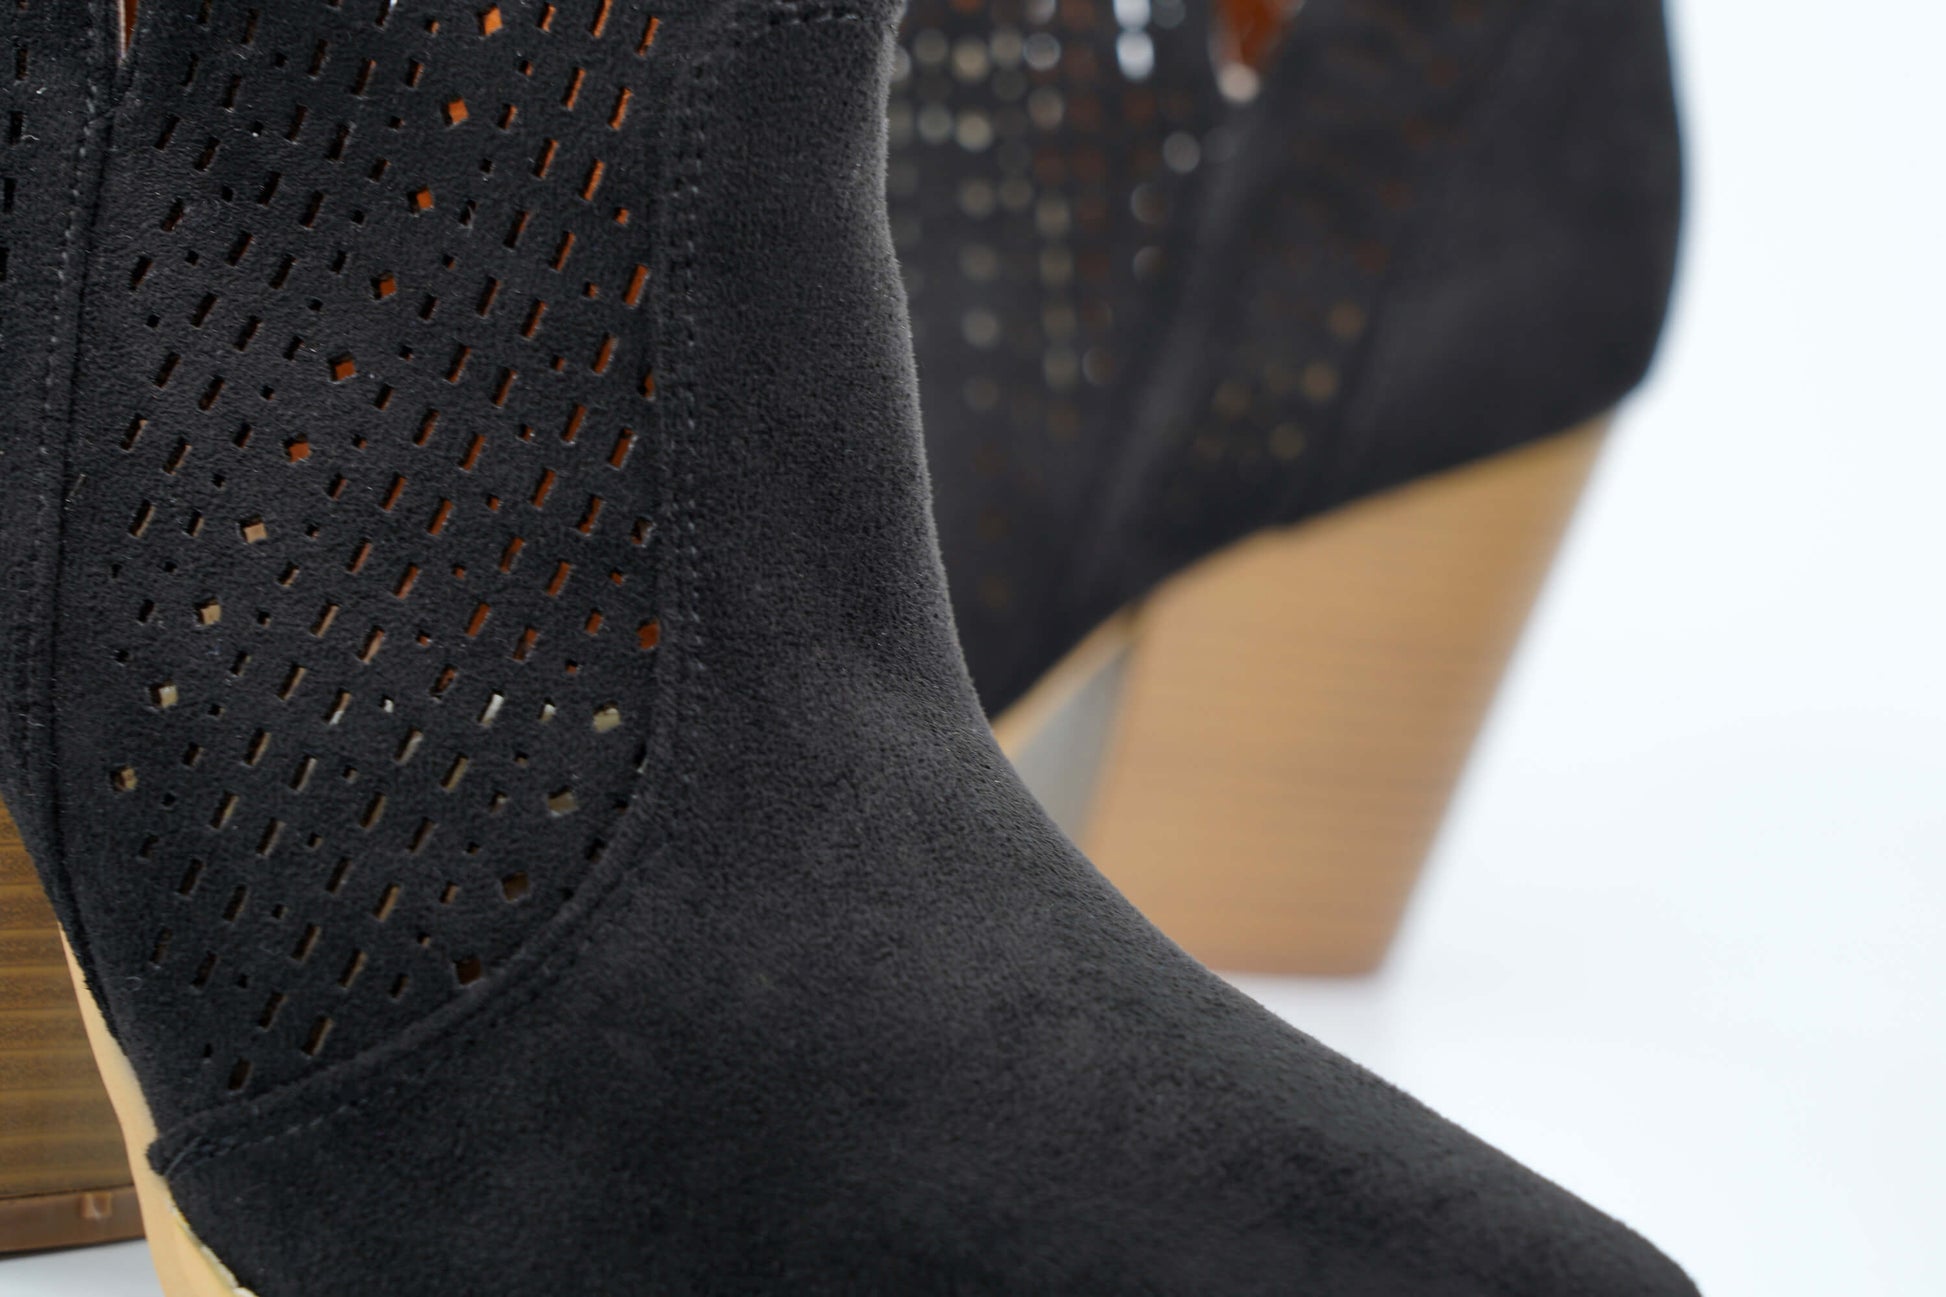 suede block heel boot in black